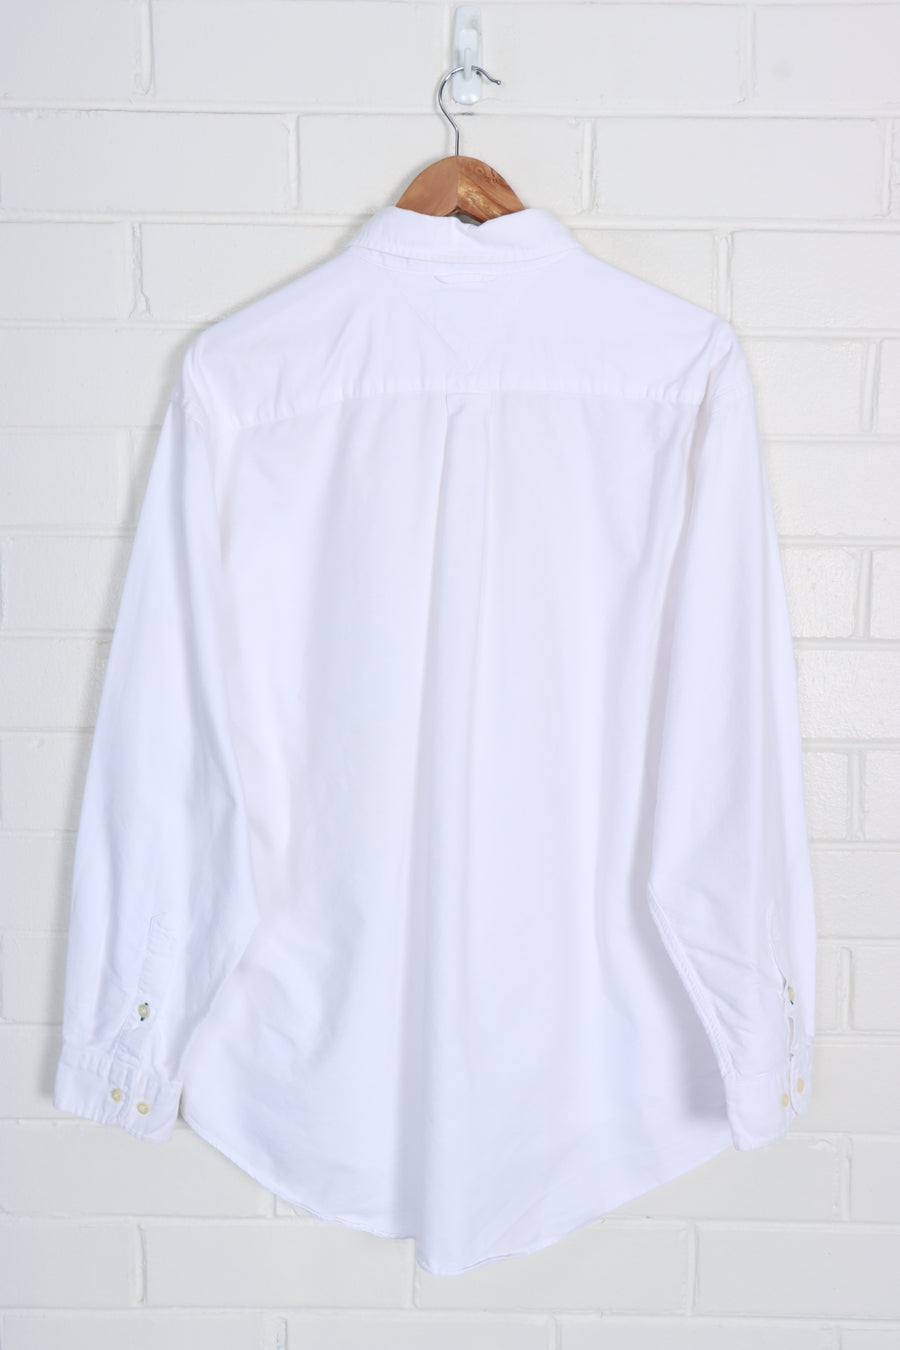 TOMMY HILFIGER Embroidered Long Sleeve Pocket Shirt (L)